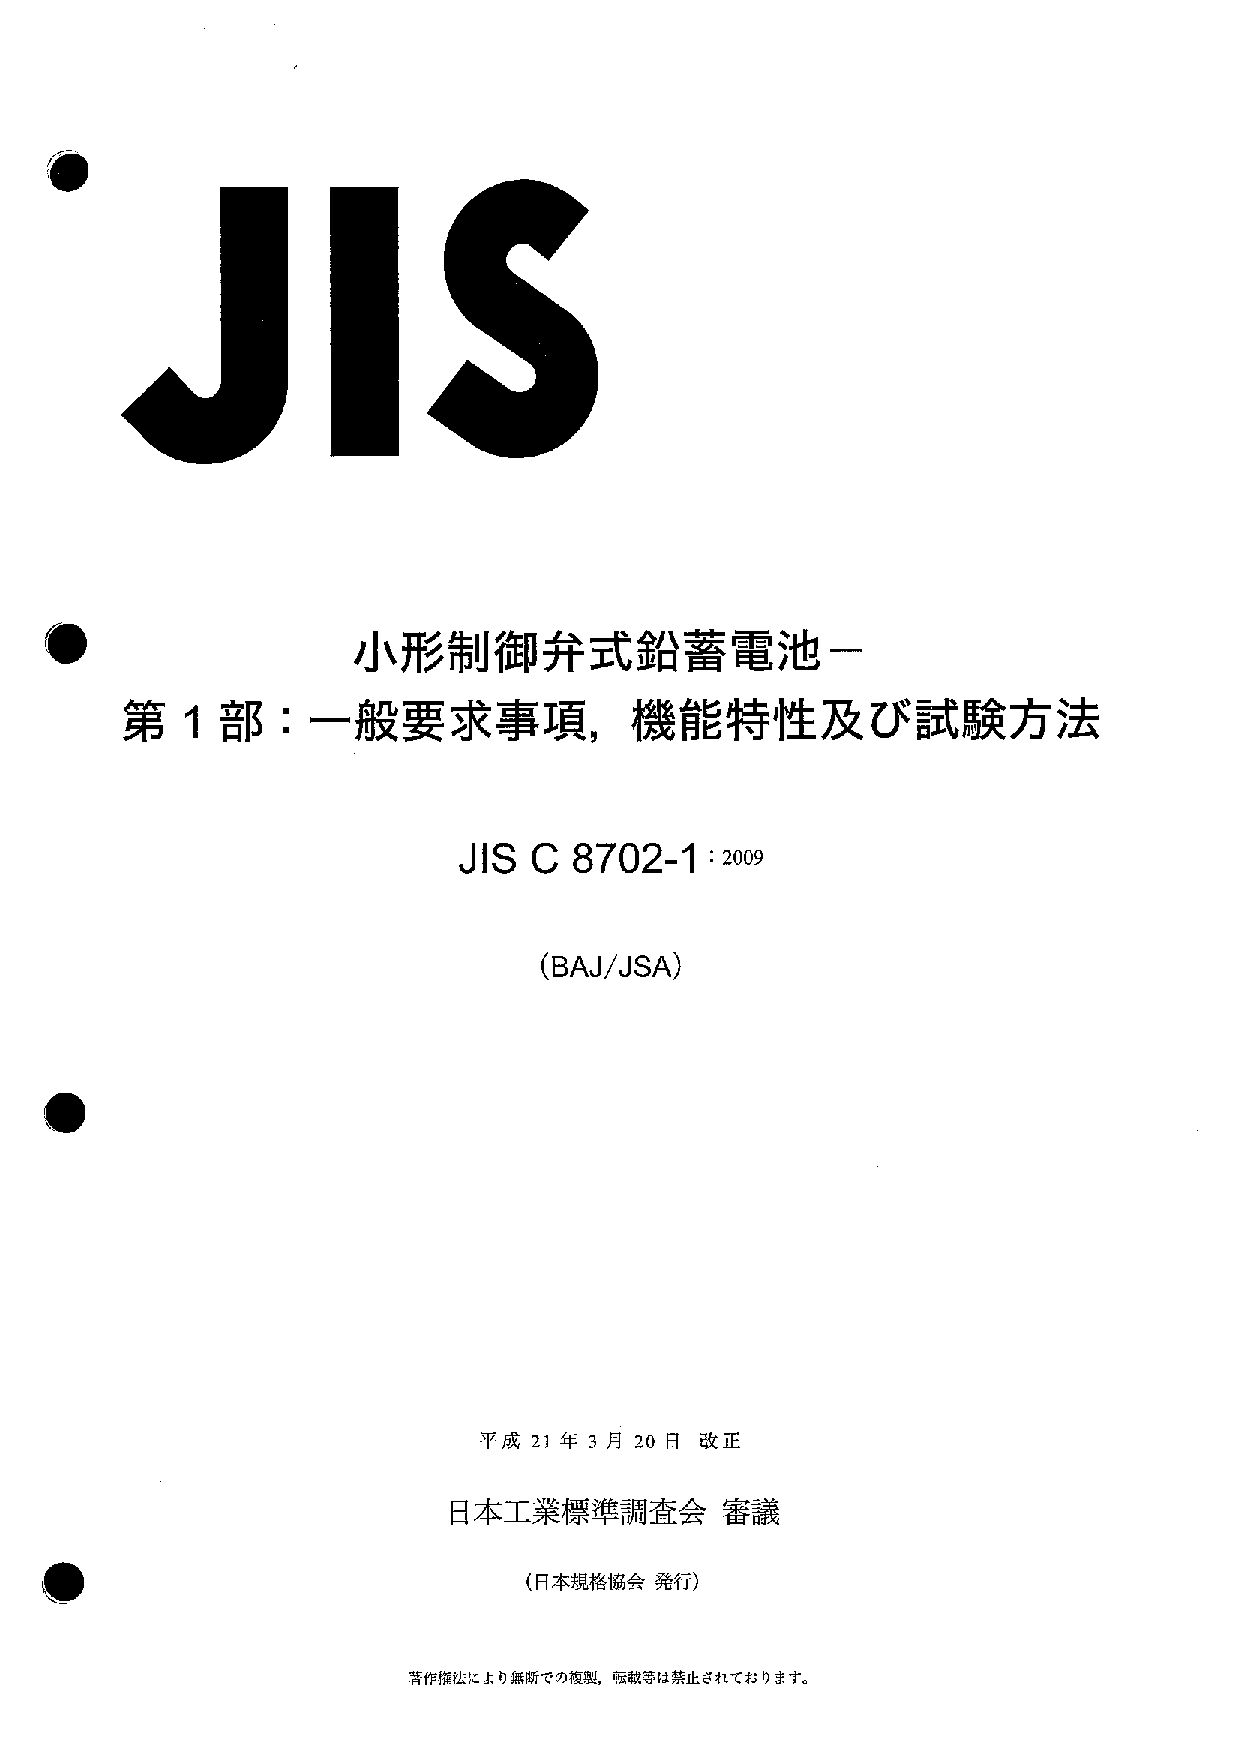 JIS C 8702-1:2009